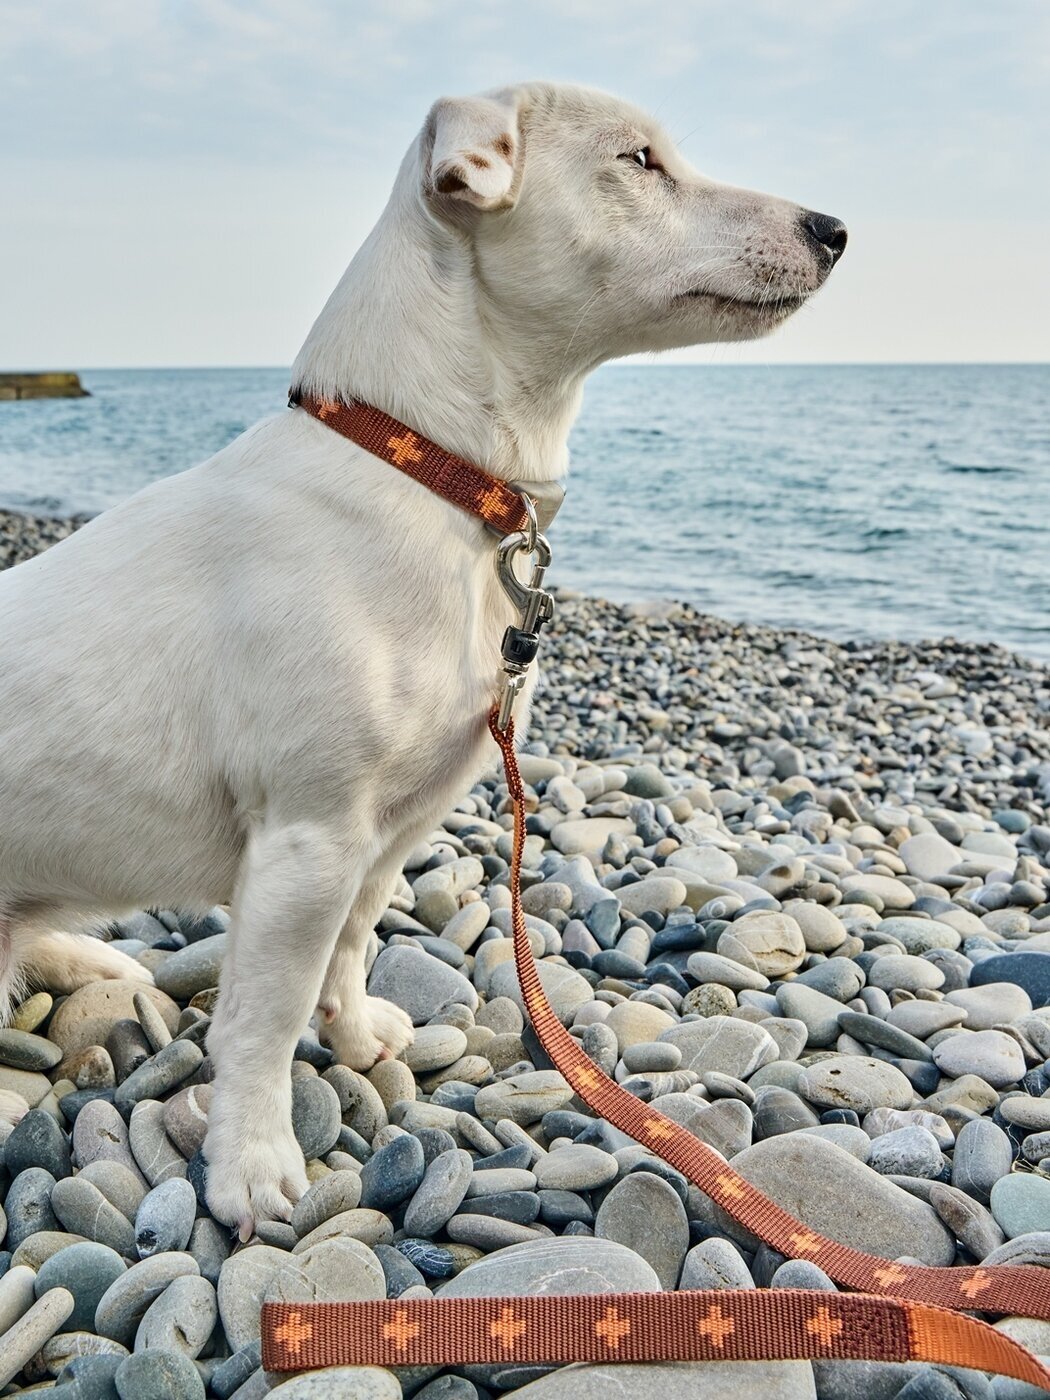 Ошейник для собак Japan Premium Pet из прочного нейлона с силиконовой защитой, цвет коричневый, размер S.